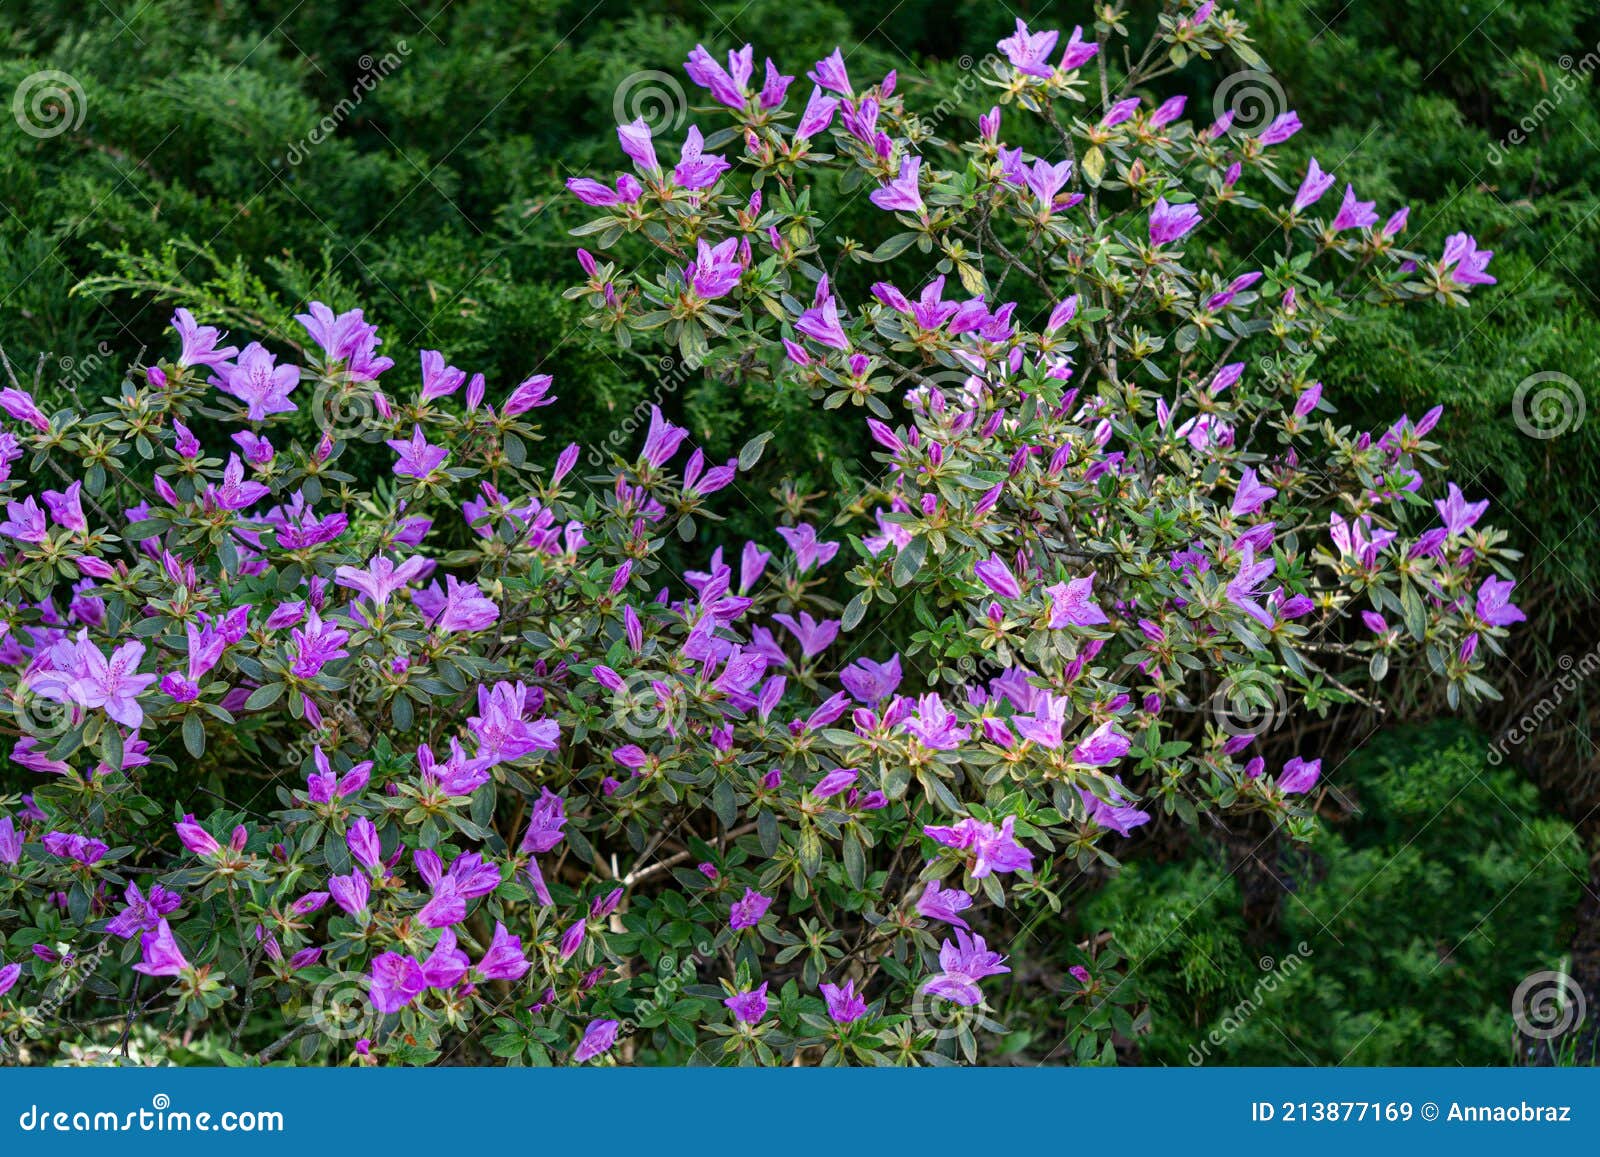 Prachtige Azalea - Struik Met Paarse Bloemen In De Tuin Stock Afbeelding -  Image Of Achtergrond, Helder: 213877169